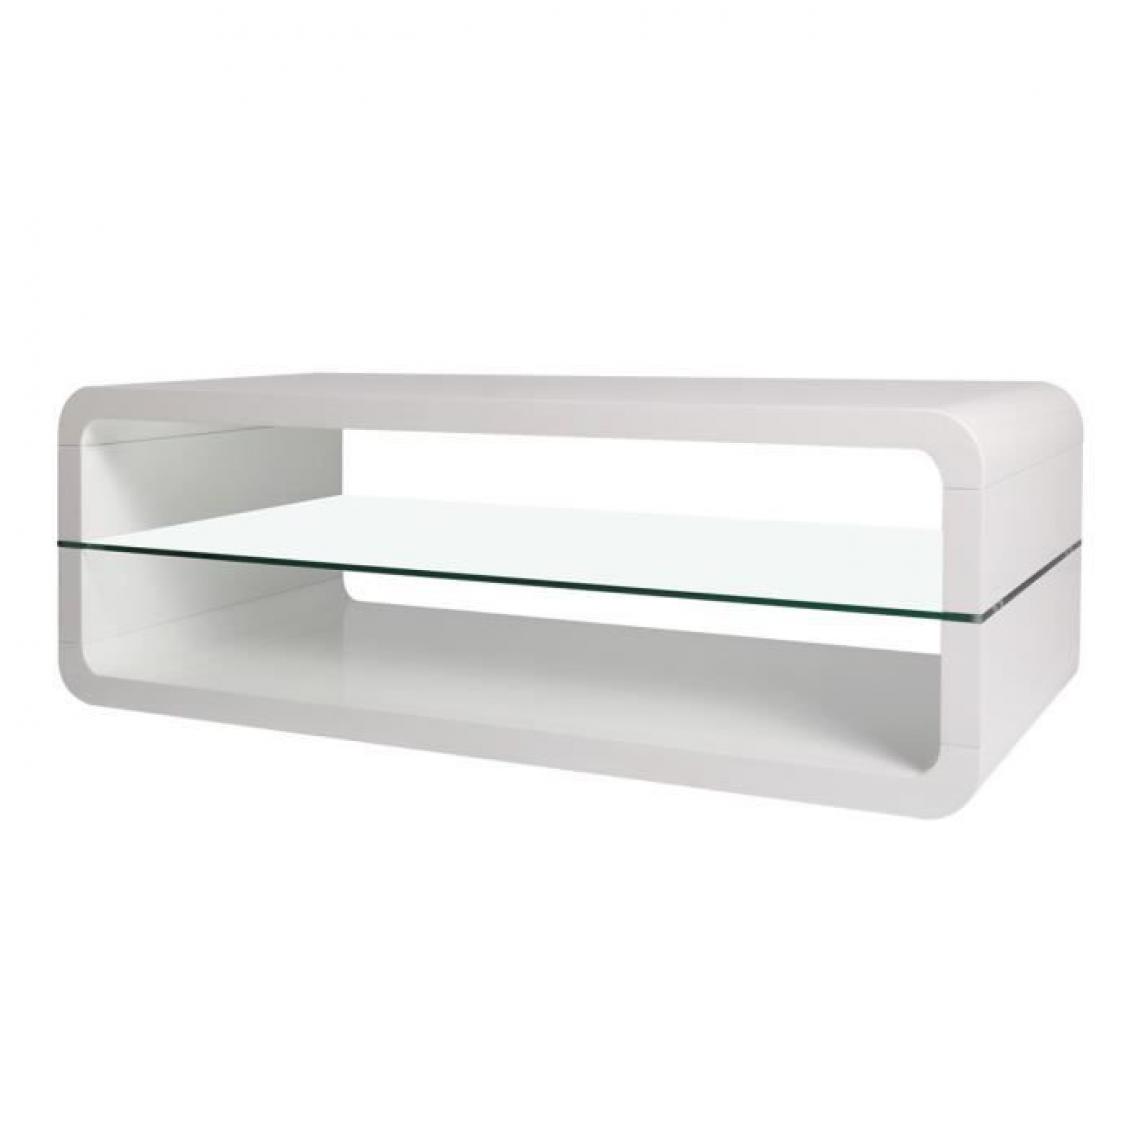 Cstore - Table basse - Blanc - L 120 x P 60 x H 41 cm - Tables basses